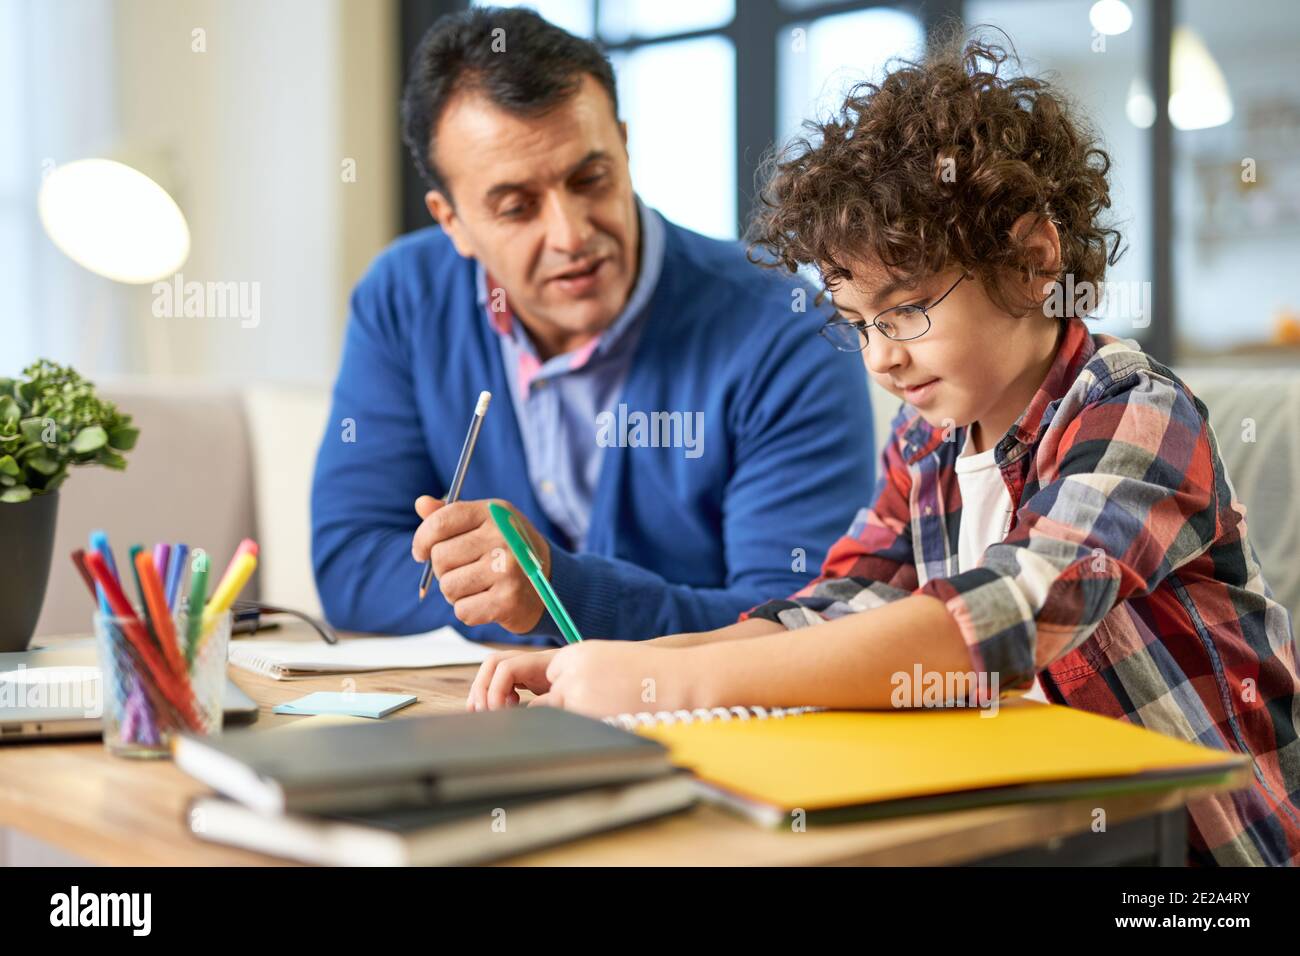 Fürsorglicher lateinischer Vater mittleren Alters, der hilft, Hausaufgaben mit seinem Sohn, Schulkind besprechen, während er zusammen am Schreibtisch zu Hause sitzt. Online studieren, Familie, Vaterschaft Konzept Stockfoto